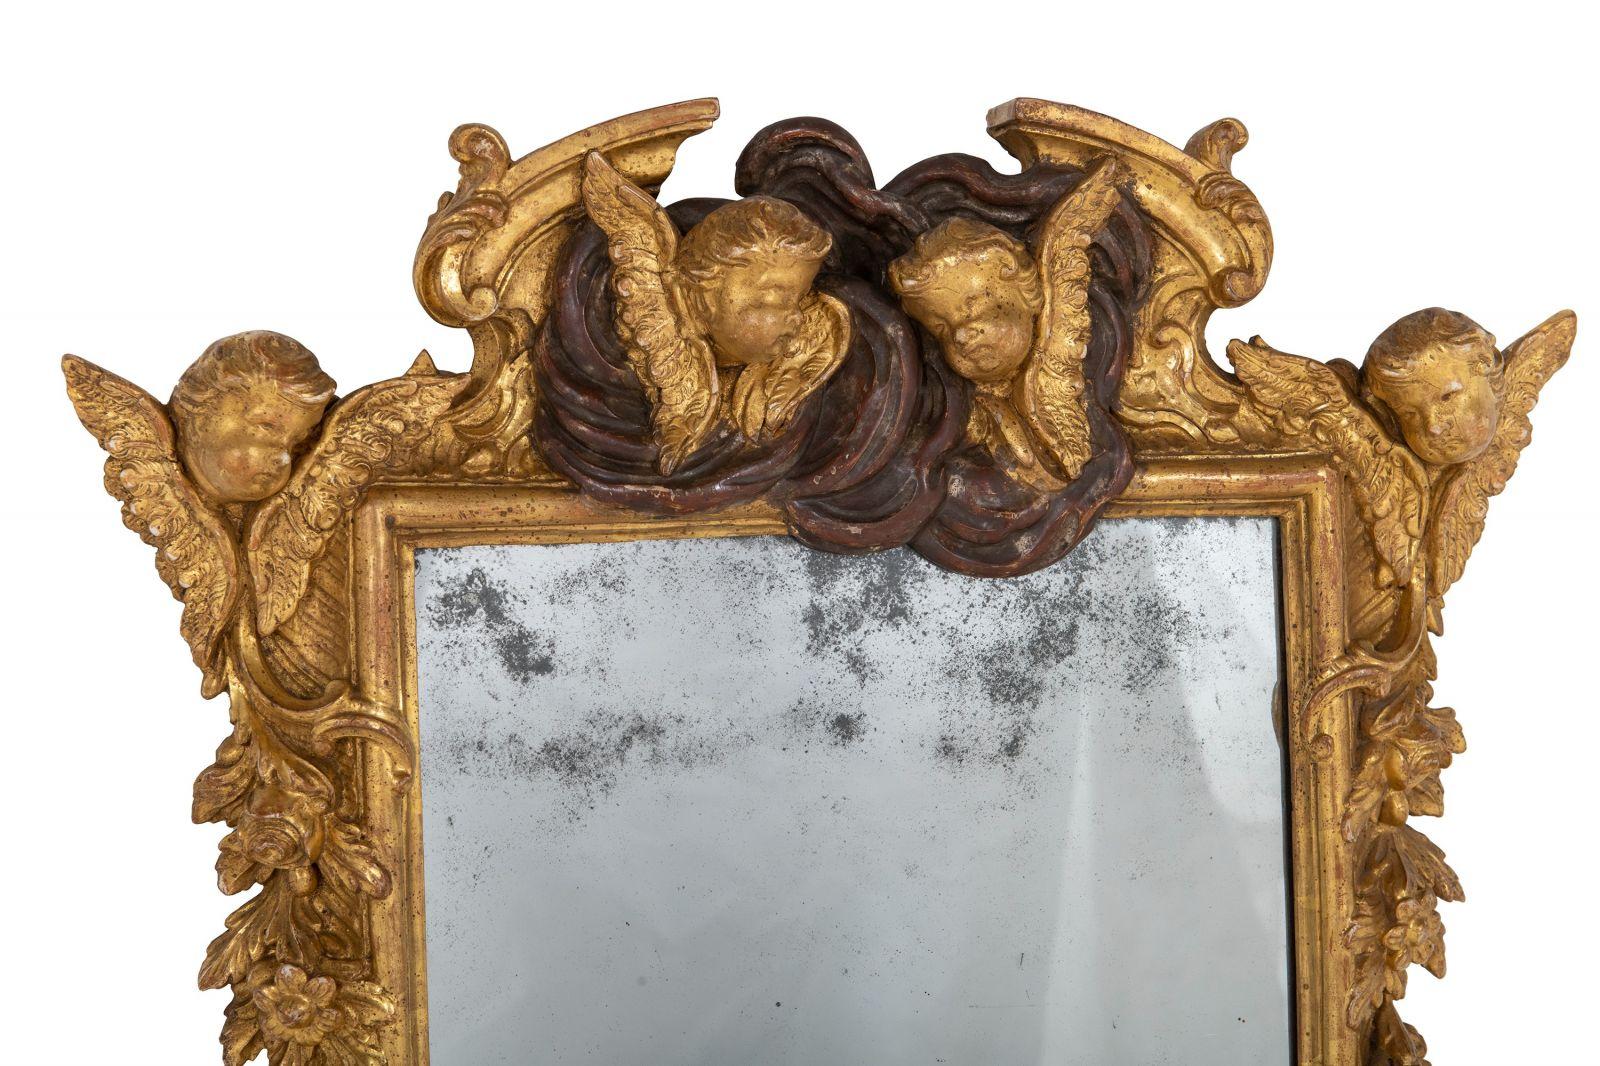 Voici une paire de miroirs muraux baroques en bois doré et gesso datant d'environ 1700 et plus tard. Cet ensemble remarquable offre une touche de grandeur du XVIIIe siècle, avec des assiettes rectangulaires encadrées de volutes, de fleurs et de